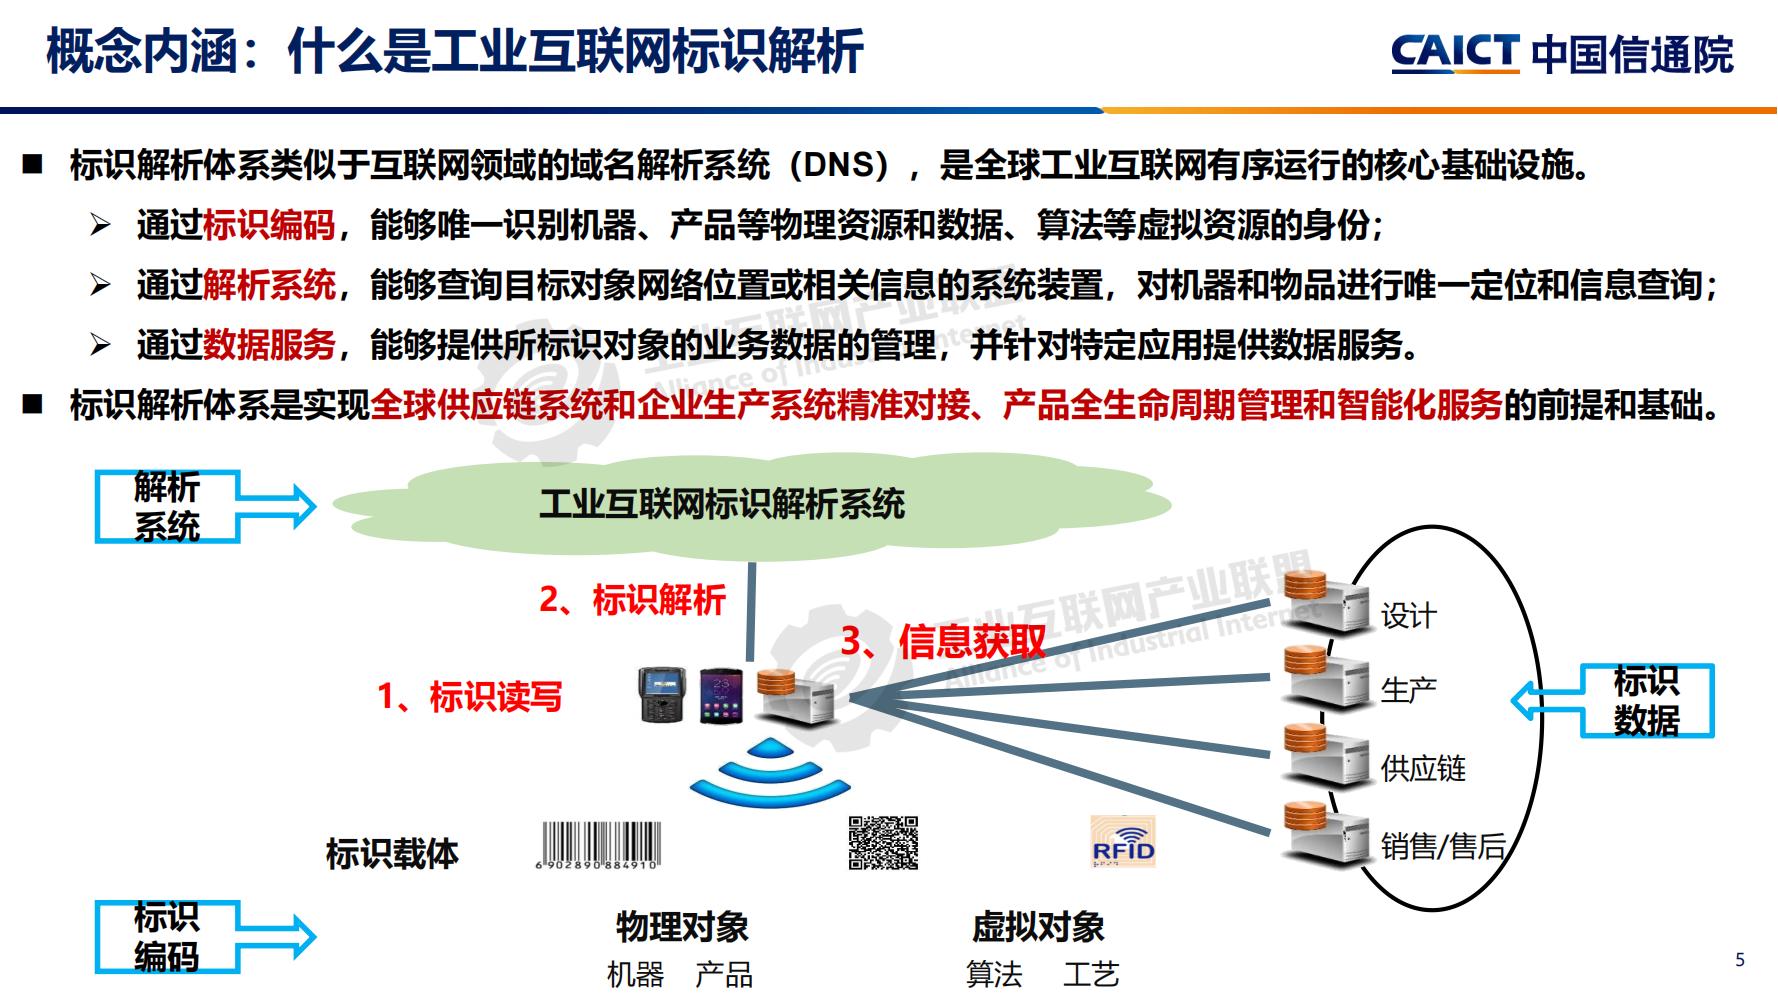 4-工业互联网标识解析体系建设进展（深圳）12-16(1)-水印_04.jpg